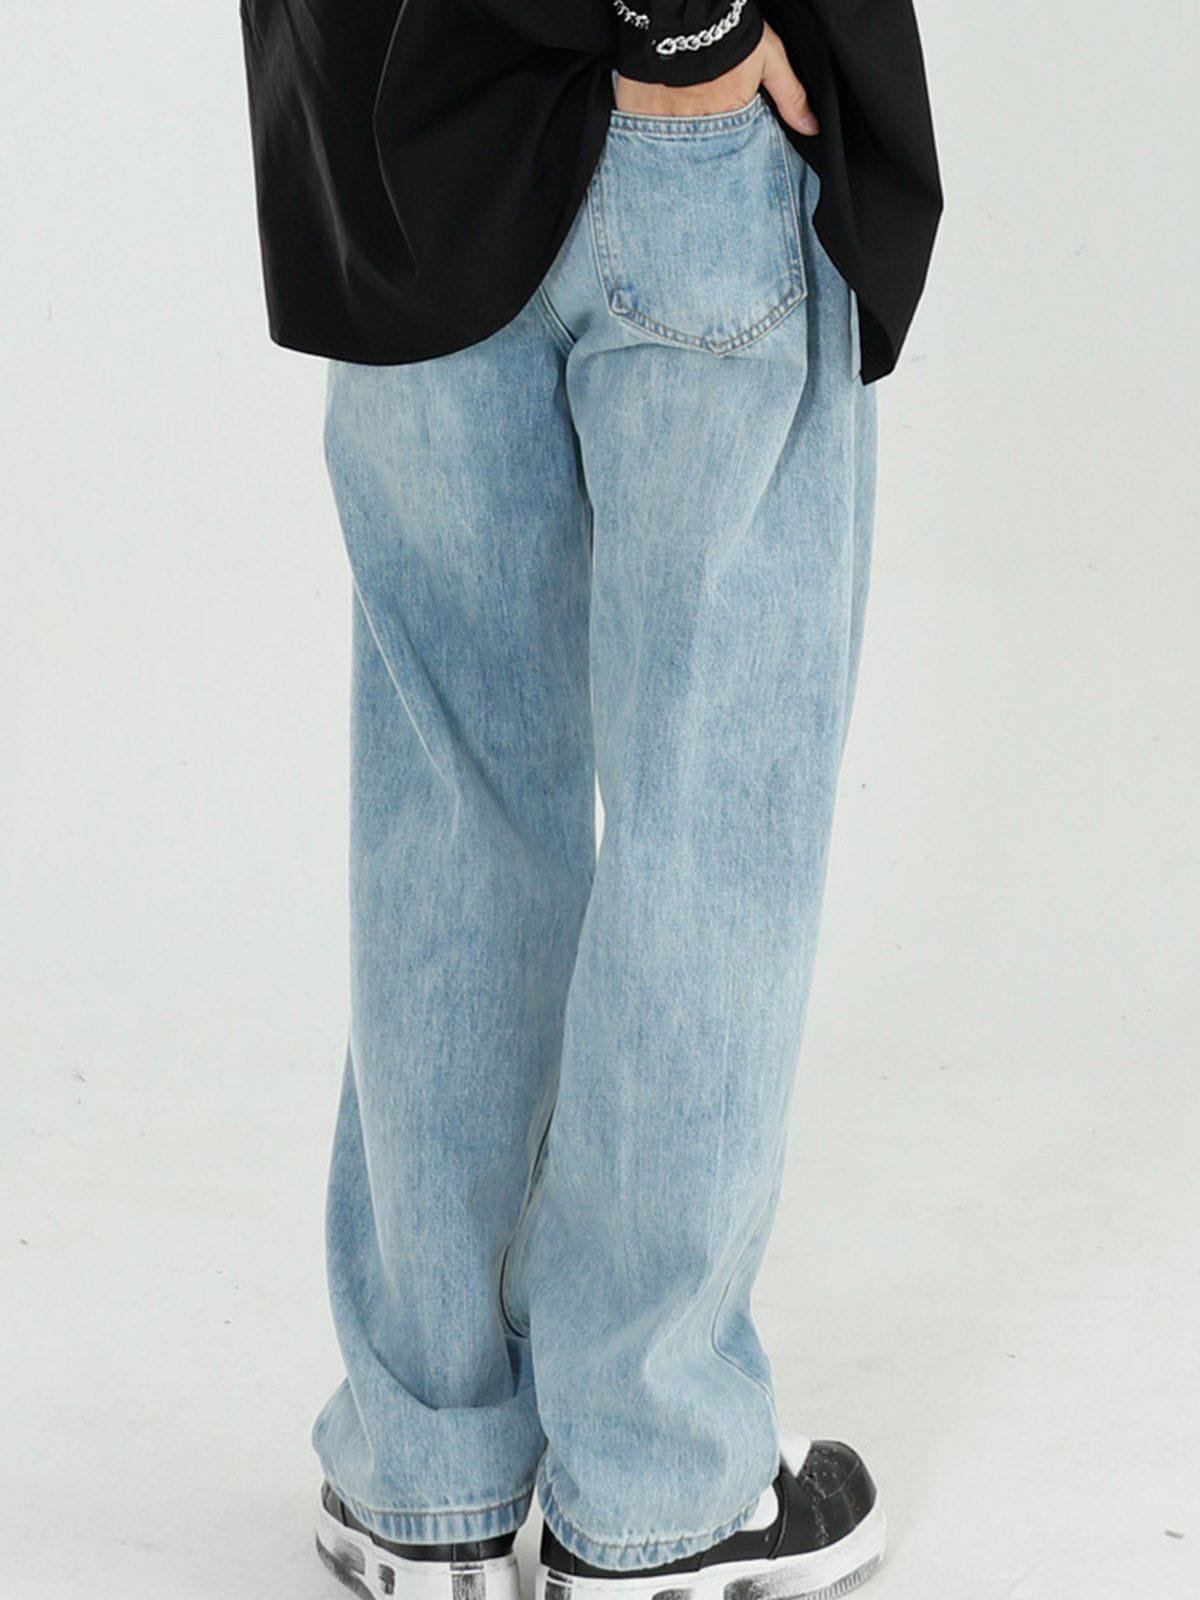 Eprezzy® - Straight Casual Jeans Streetwear Fashion - eprezzy.com